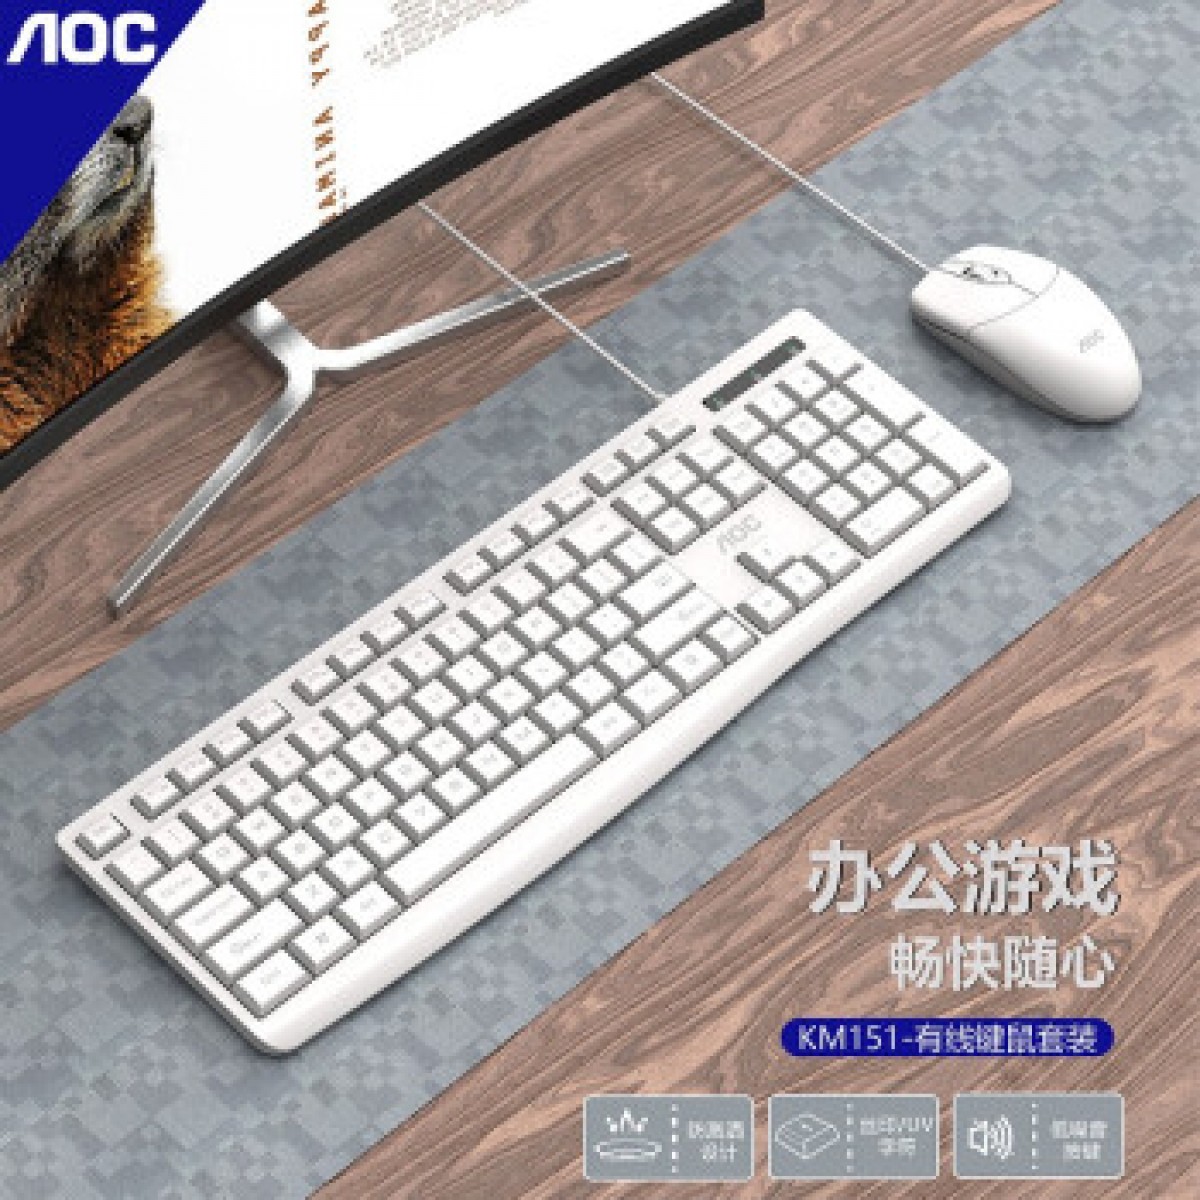 AOC KM151 有线键盘鼠标套装 白色